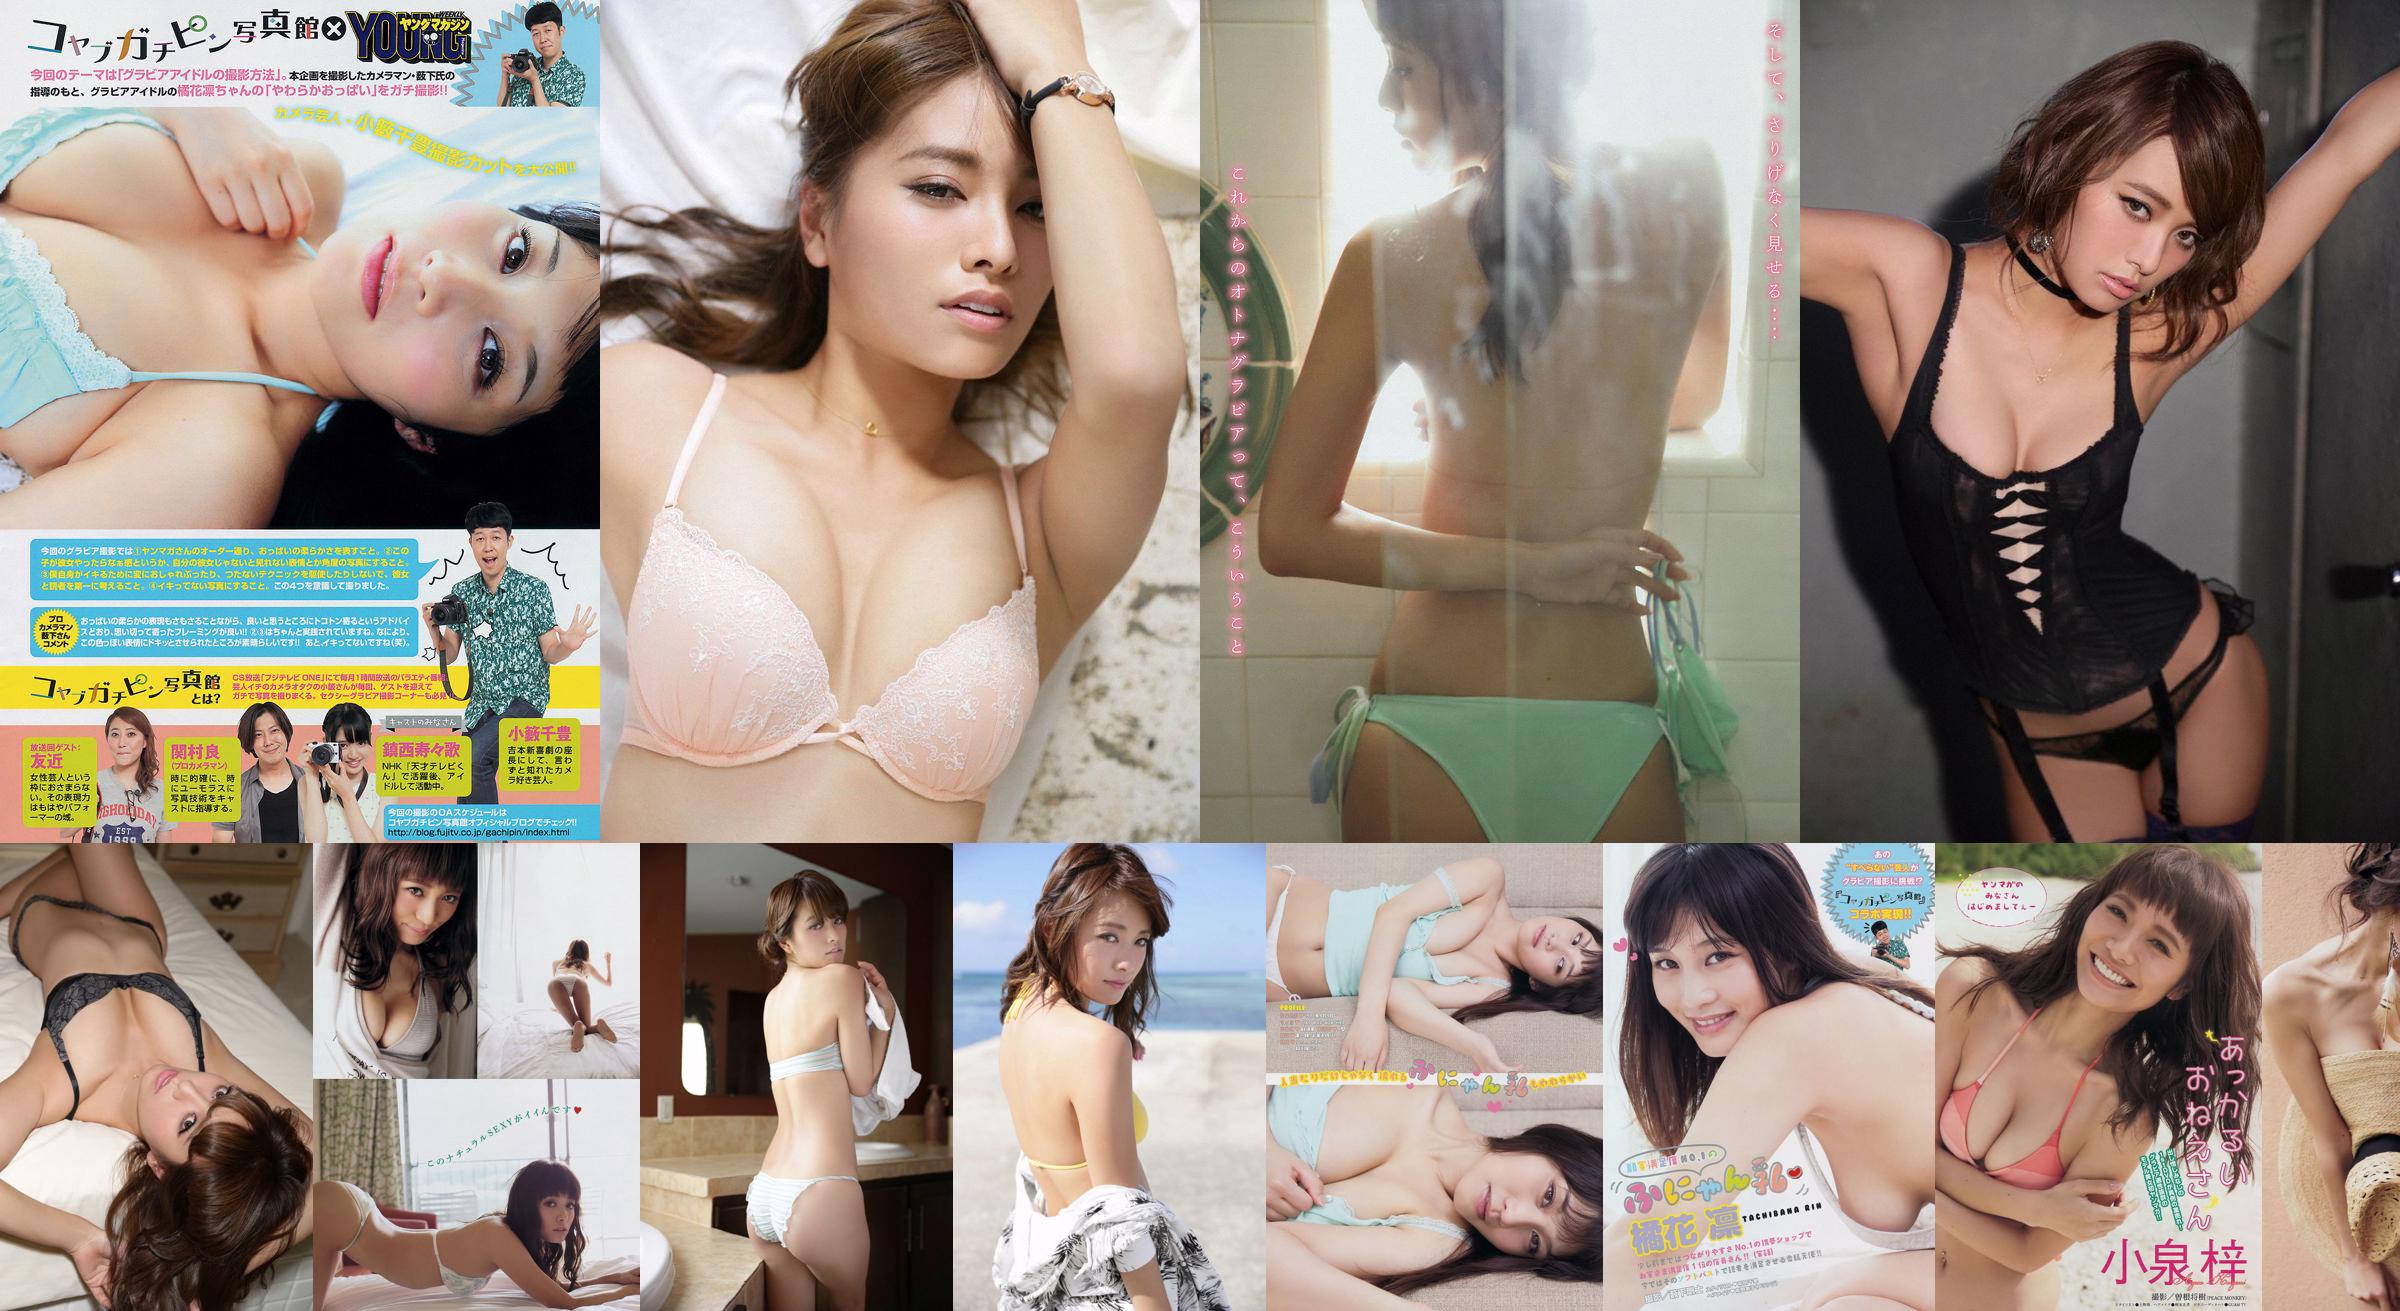 [Young Magazine] Azusa Koizumi Tachibana Rin 2014 No.43 Photo Magazine No.e563c8 หน้า 1